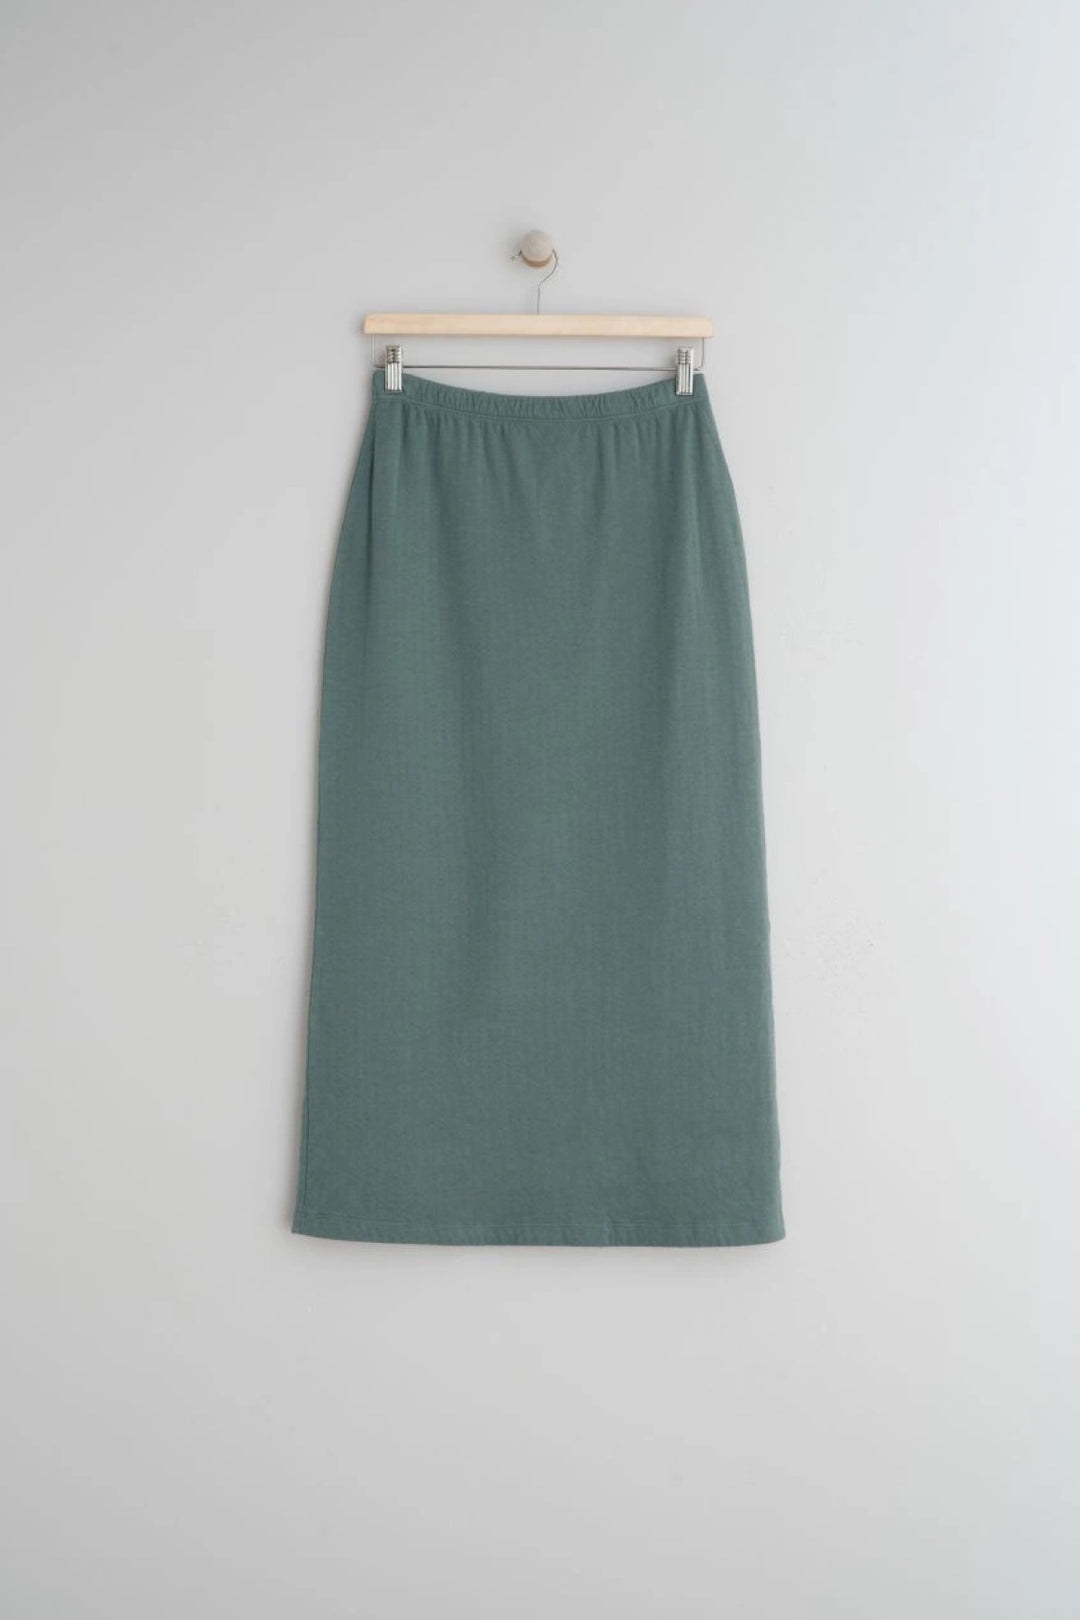 Mila skirt